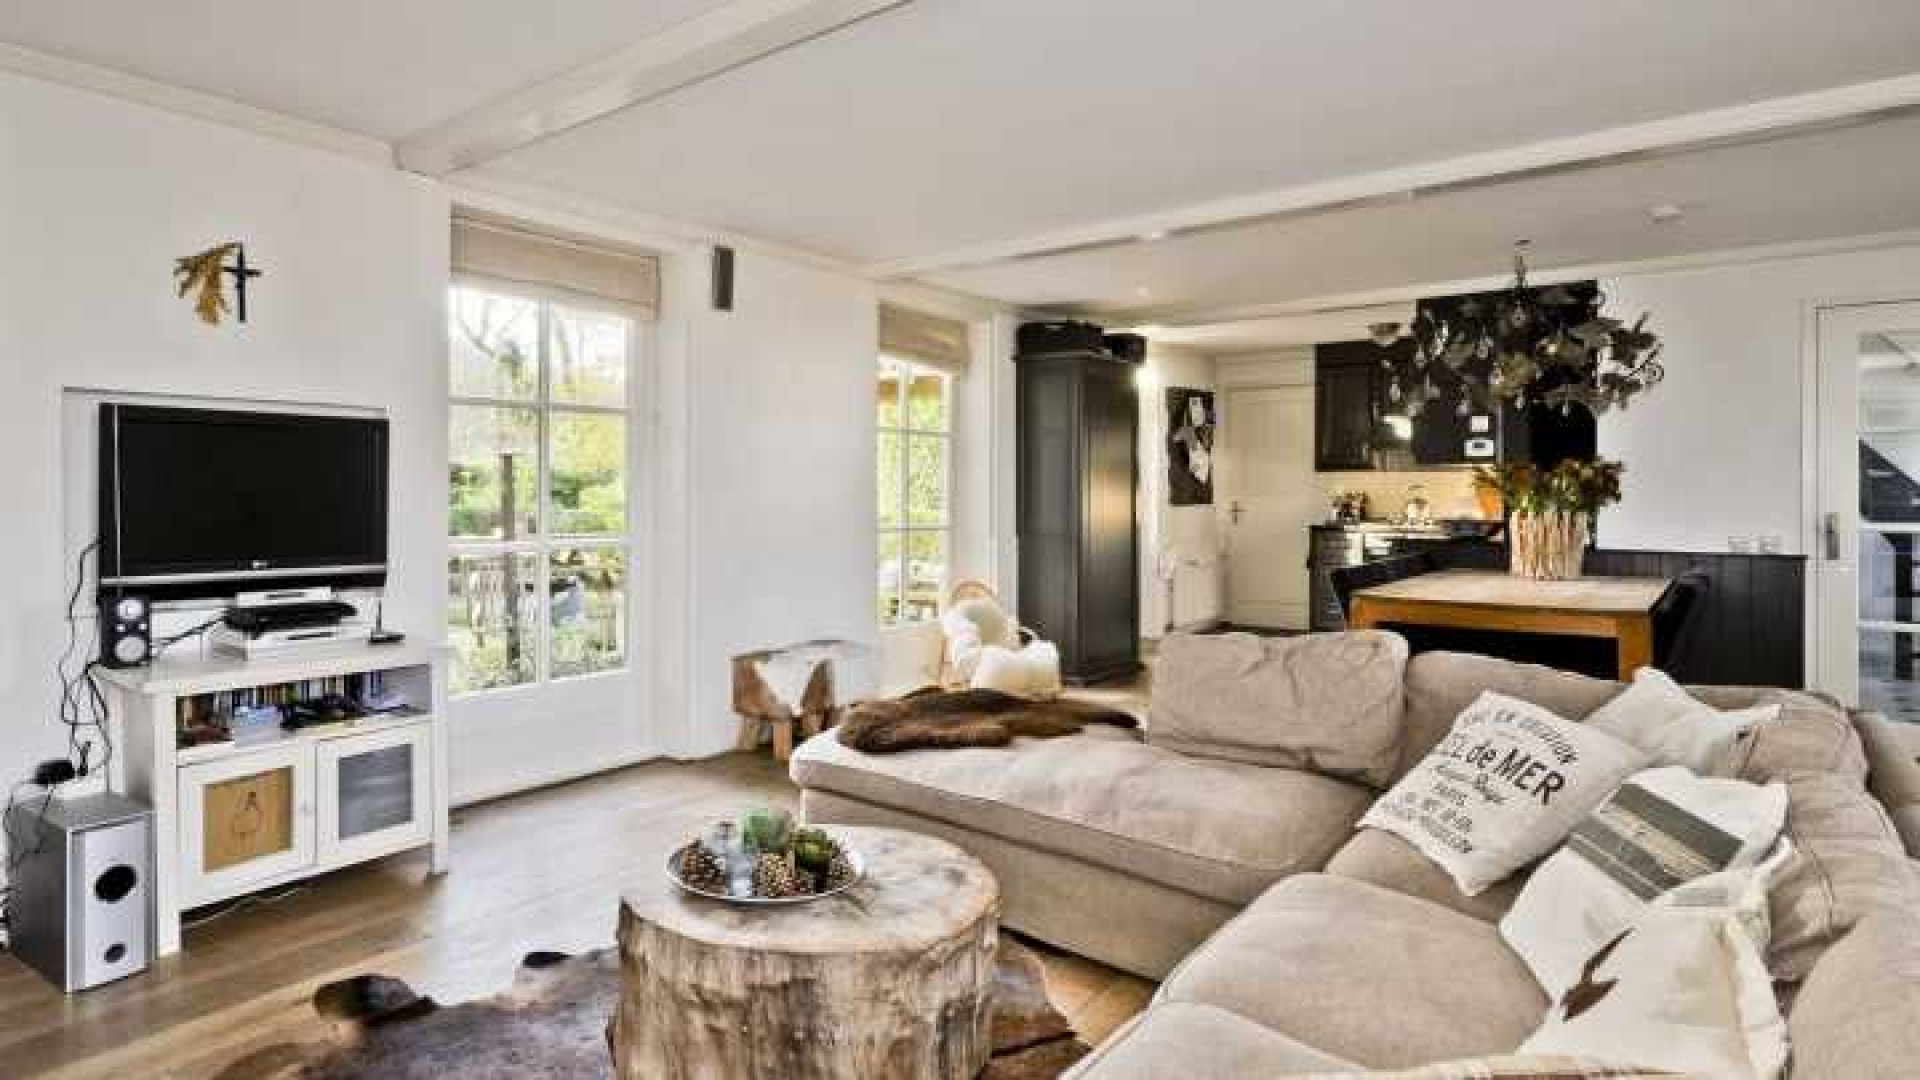 Henny Huisman verkoopt zijn villa zwaar onder de vraagprijs. Zie foto's 29